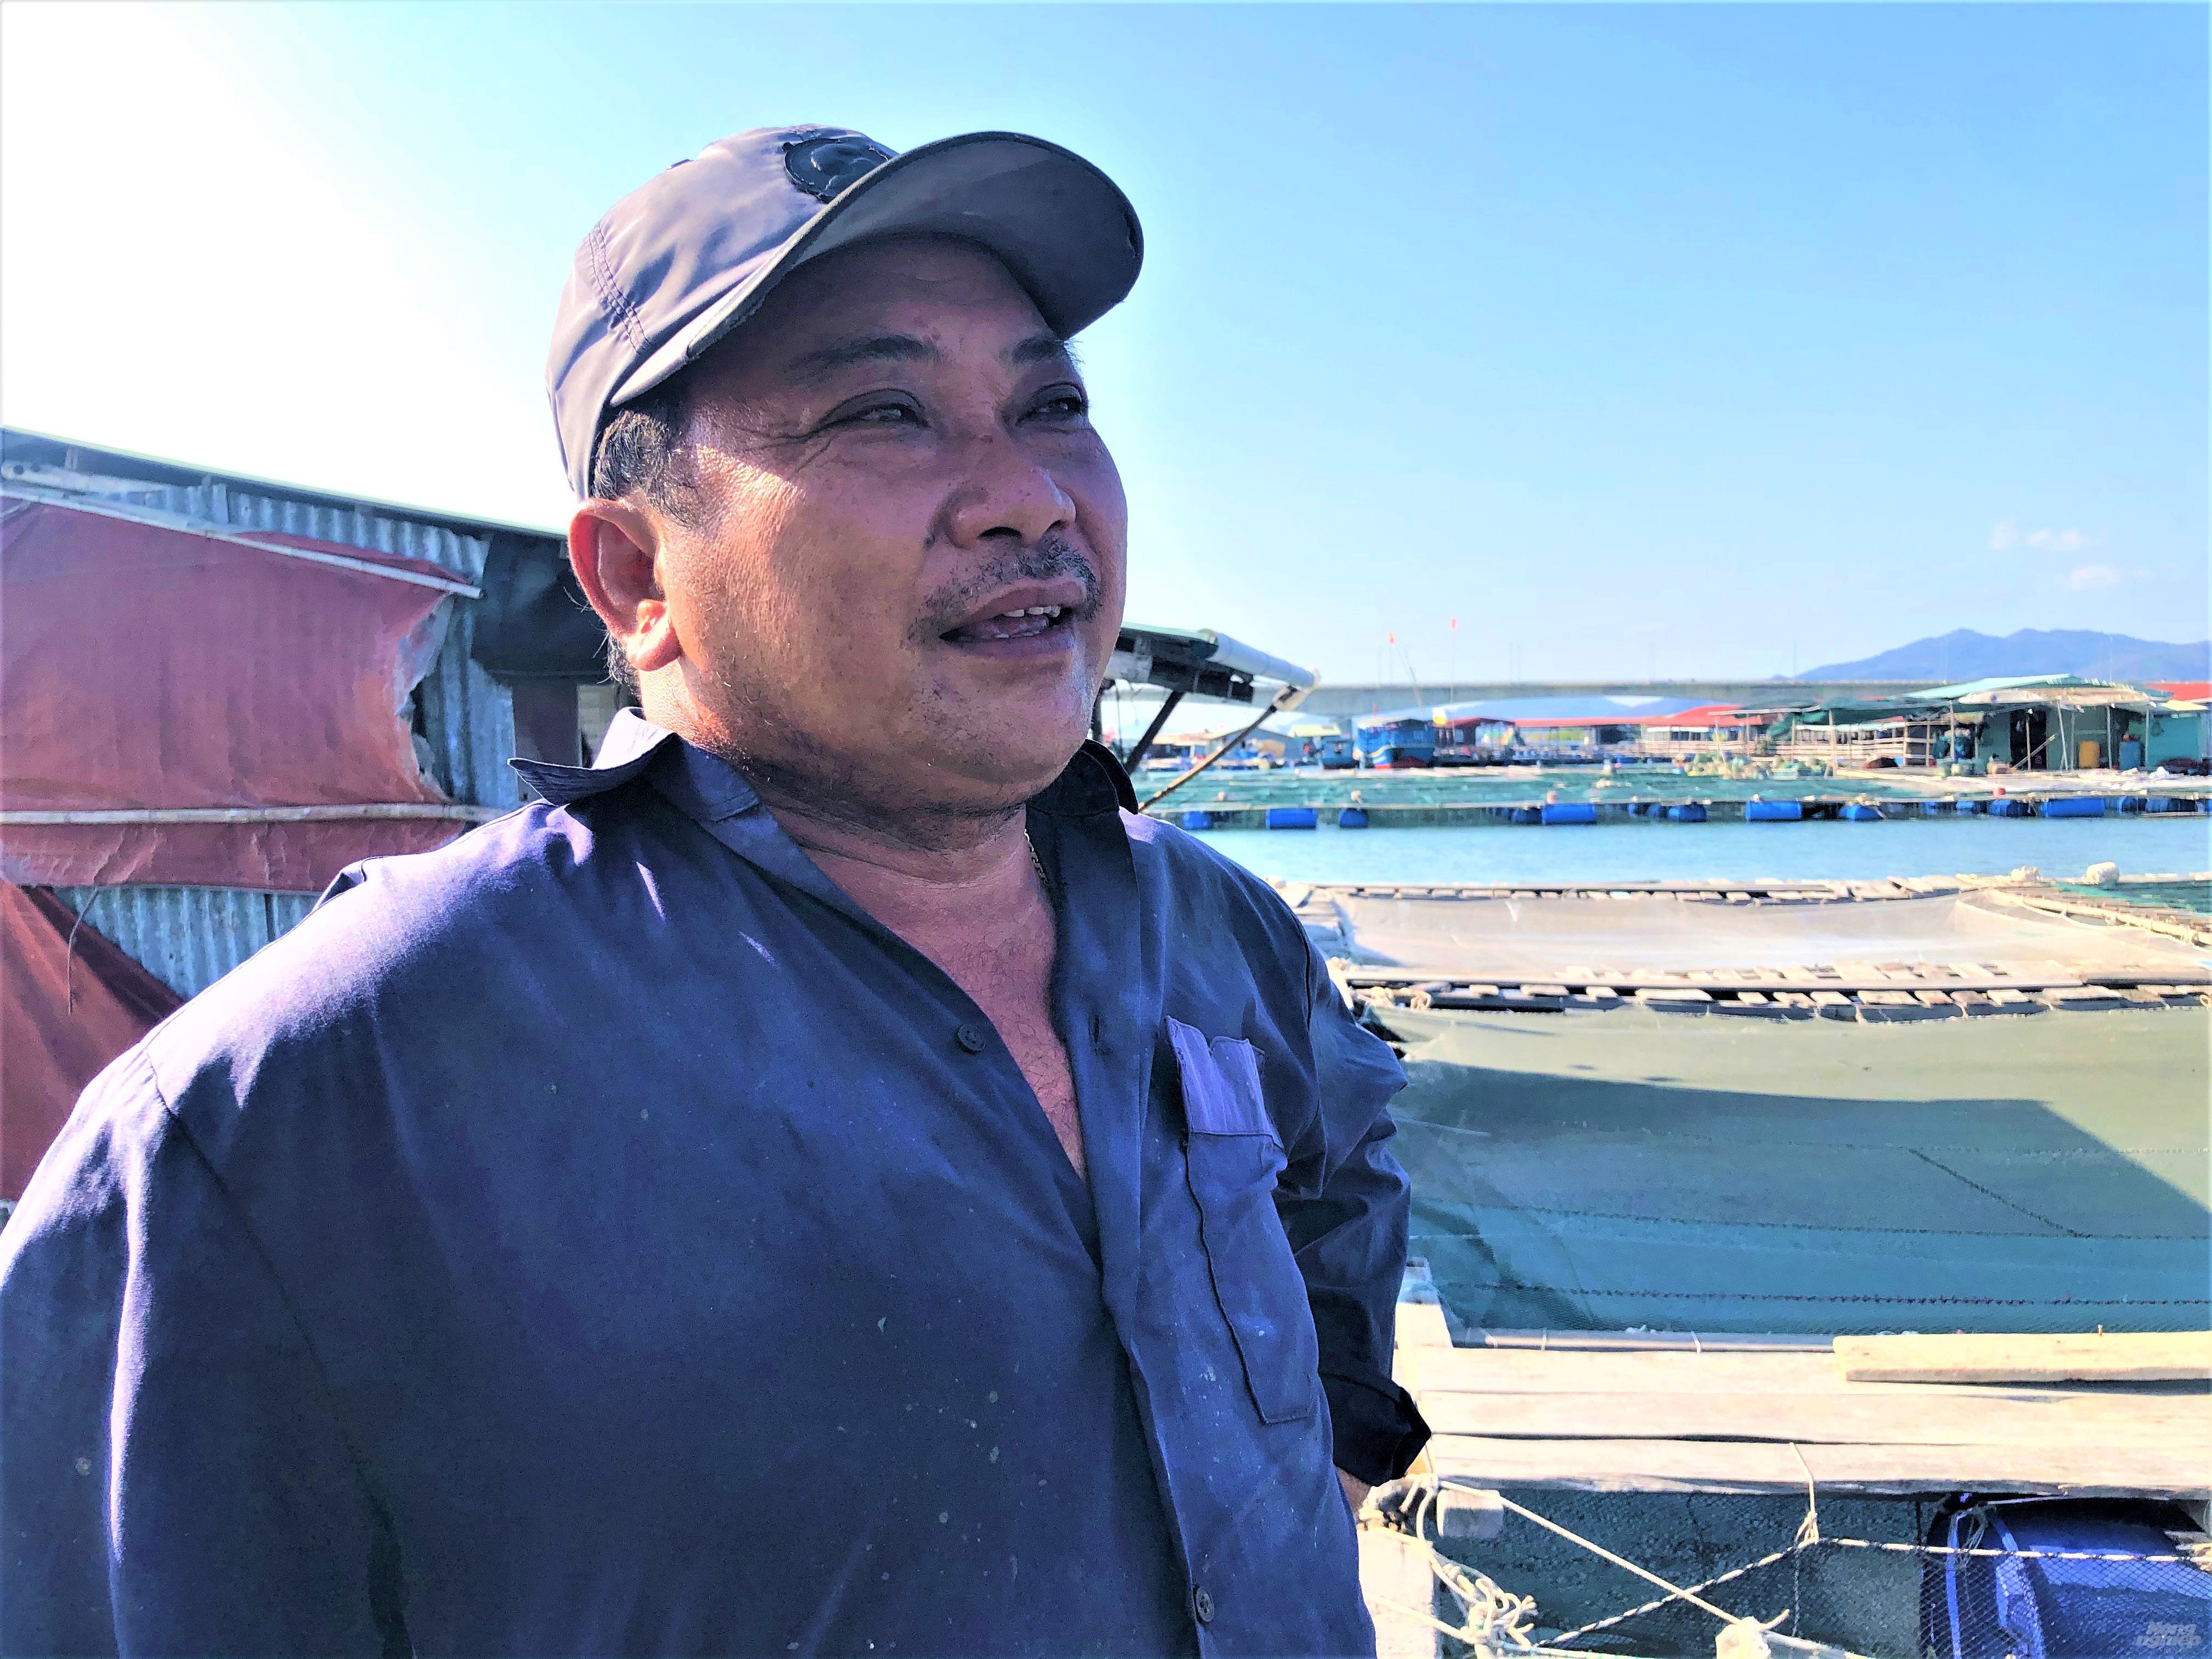 Người dân nuôi thủy sản ở khu vực sông Chà Và, sông Dinh, Mỏ Nhát… đang lâm vào hoàn cảnh lao đao vì bị tồn đọng sản phẩm vì dịch Covid -19. Ảnh: MV.